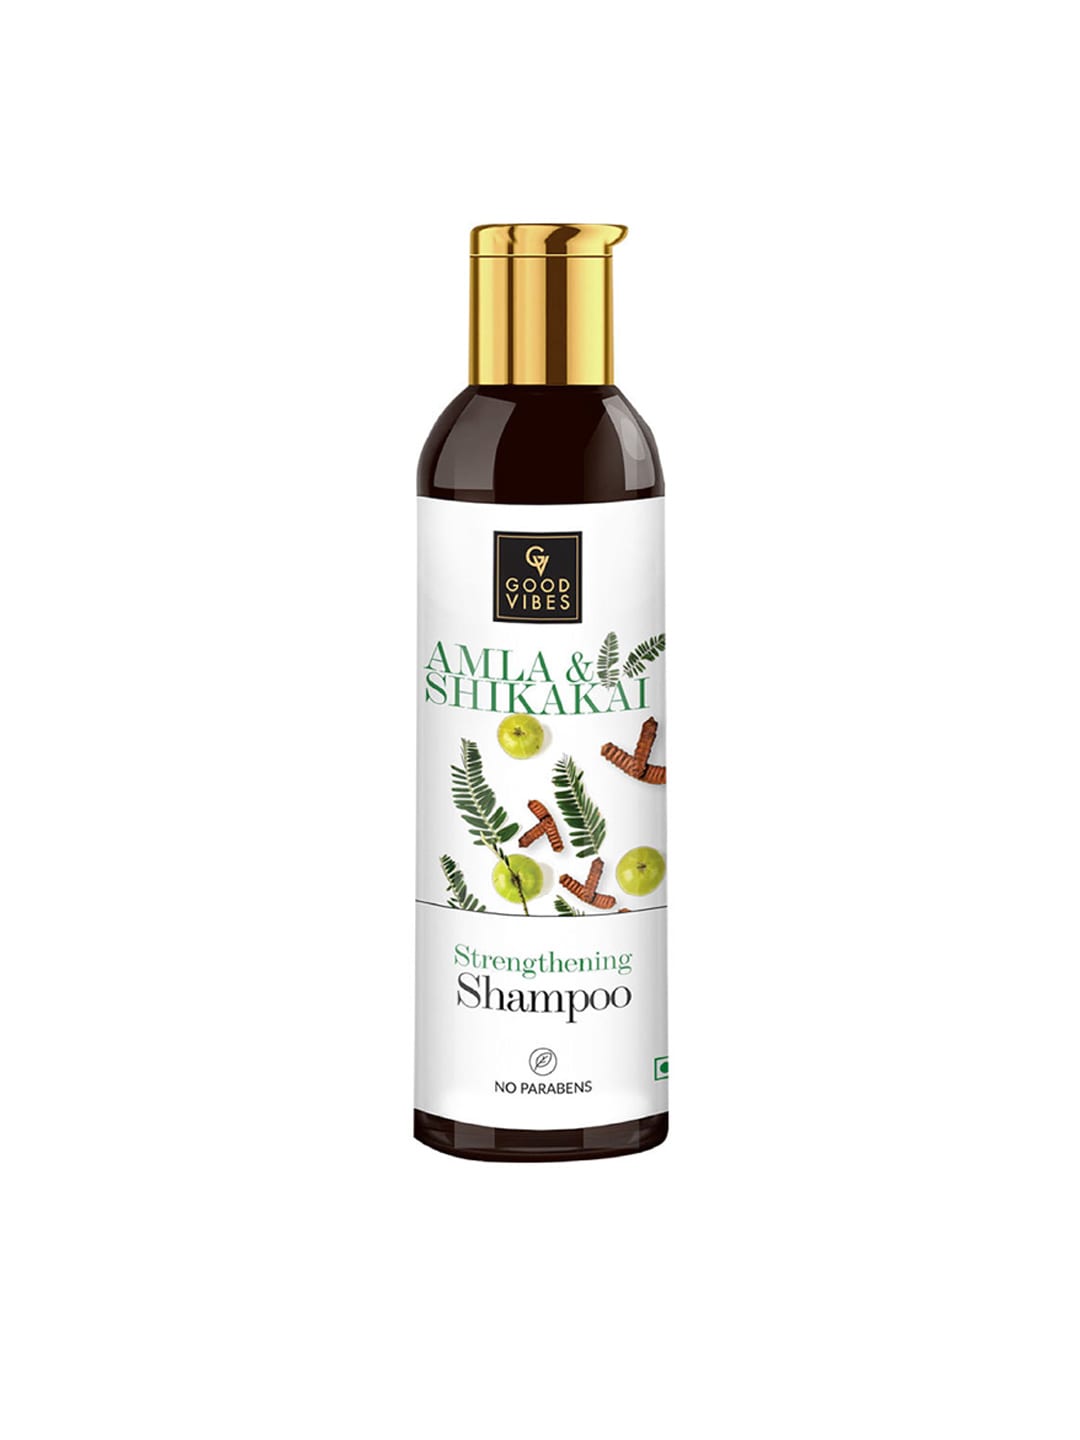 Good Vibes Amla Shikakai Strengthening Shampoo- 200 ml Price in India